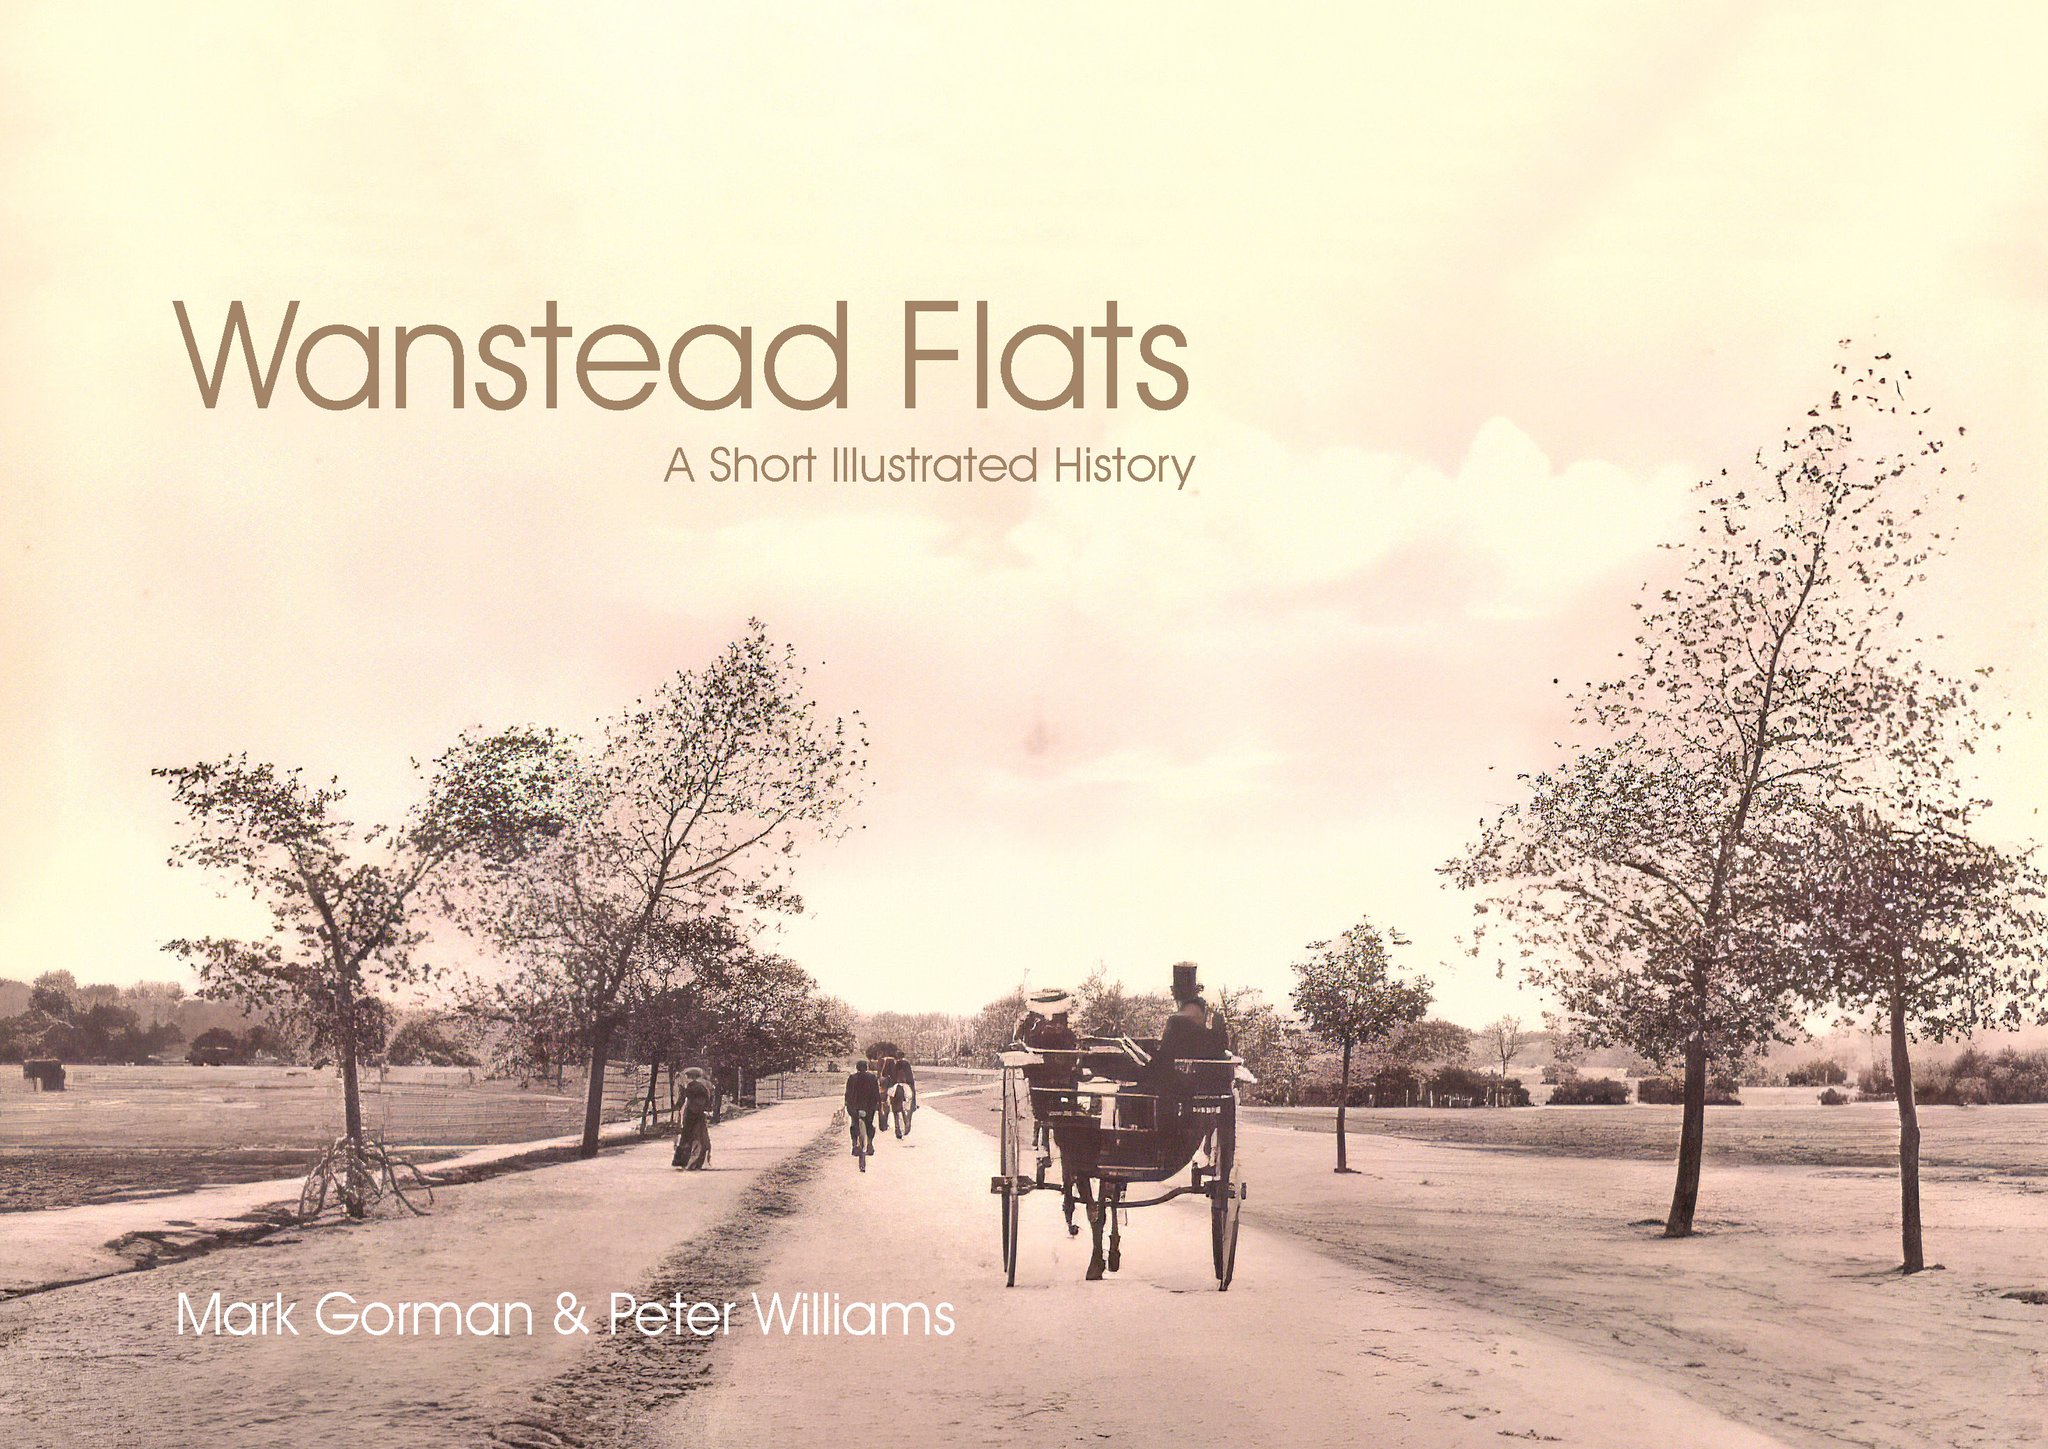 Wanstead Flats by Mark Gorman & Peter Williams